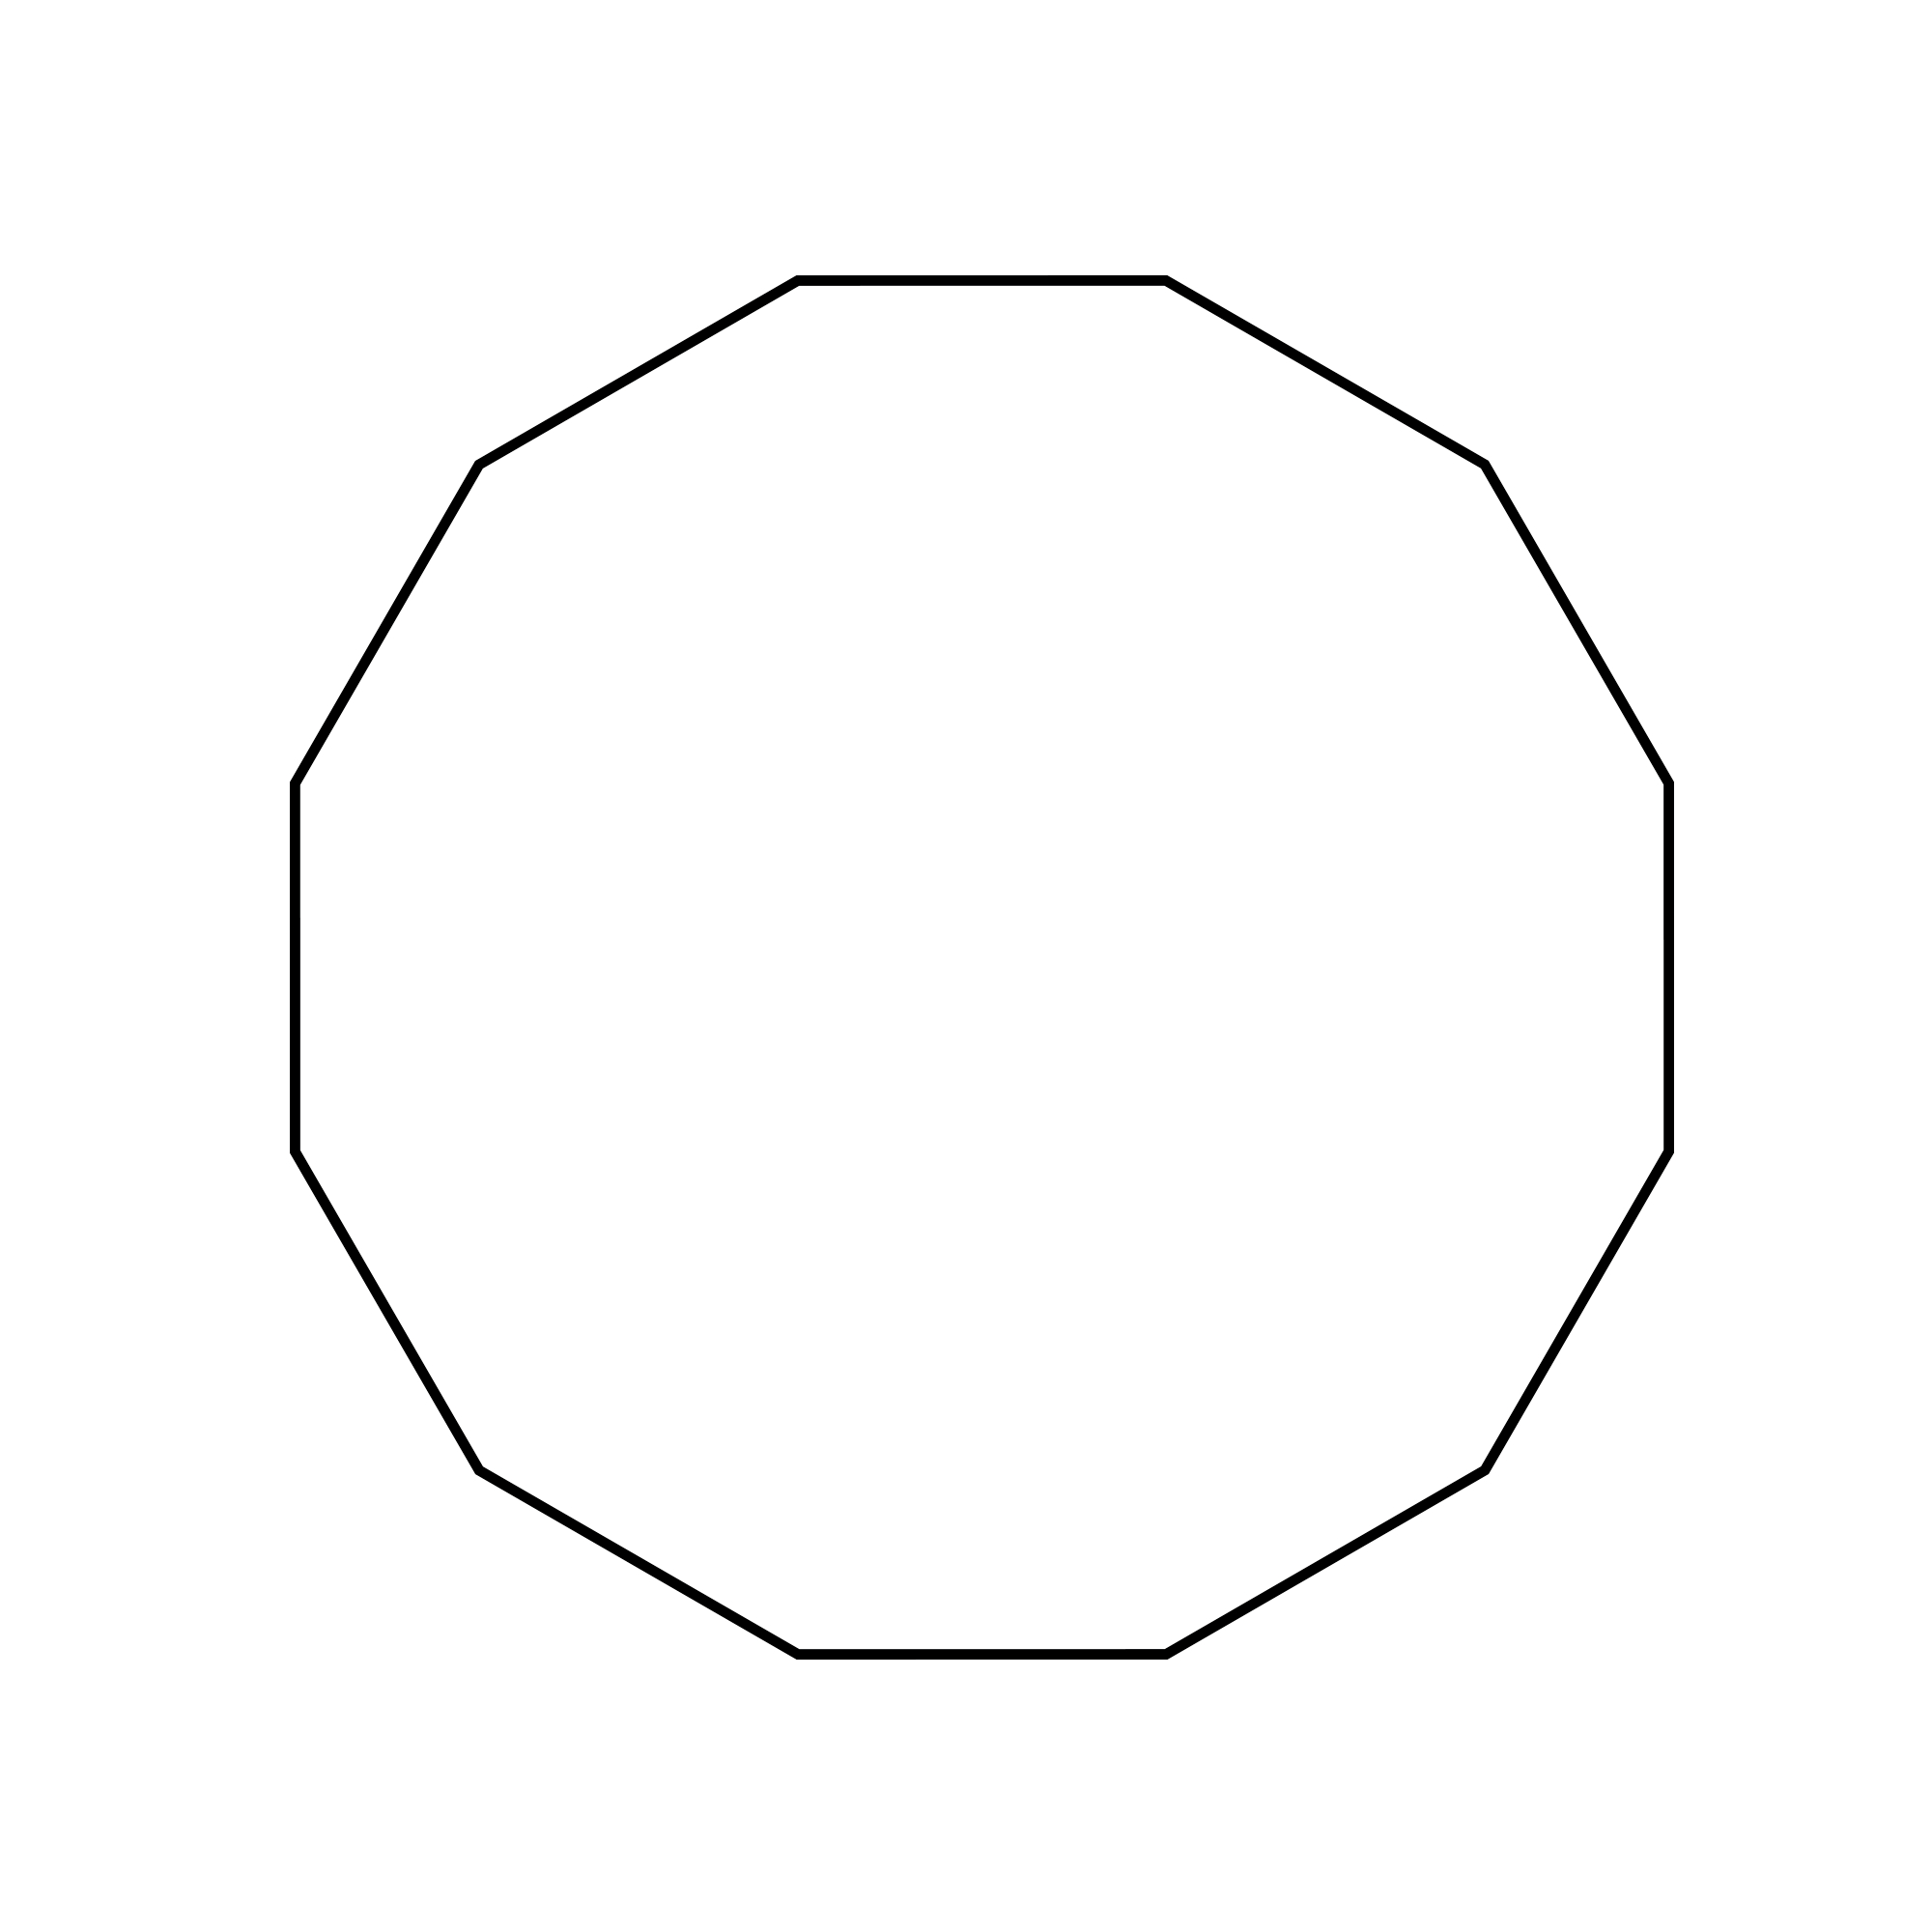 Figure geometriche - Figura geometrica piana - Dodecagono poligono a 12 lati